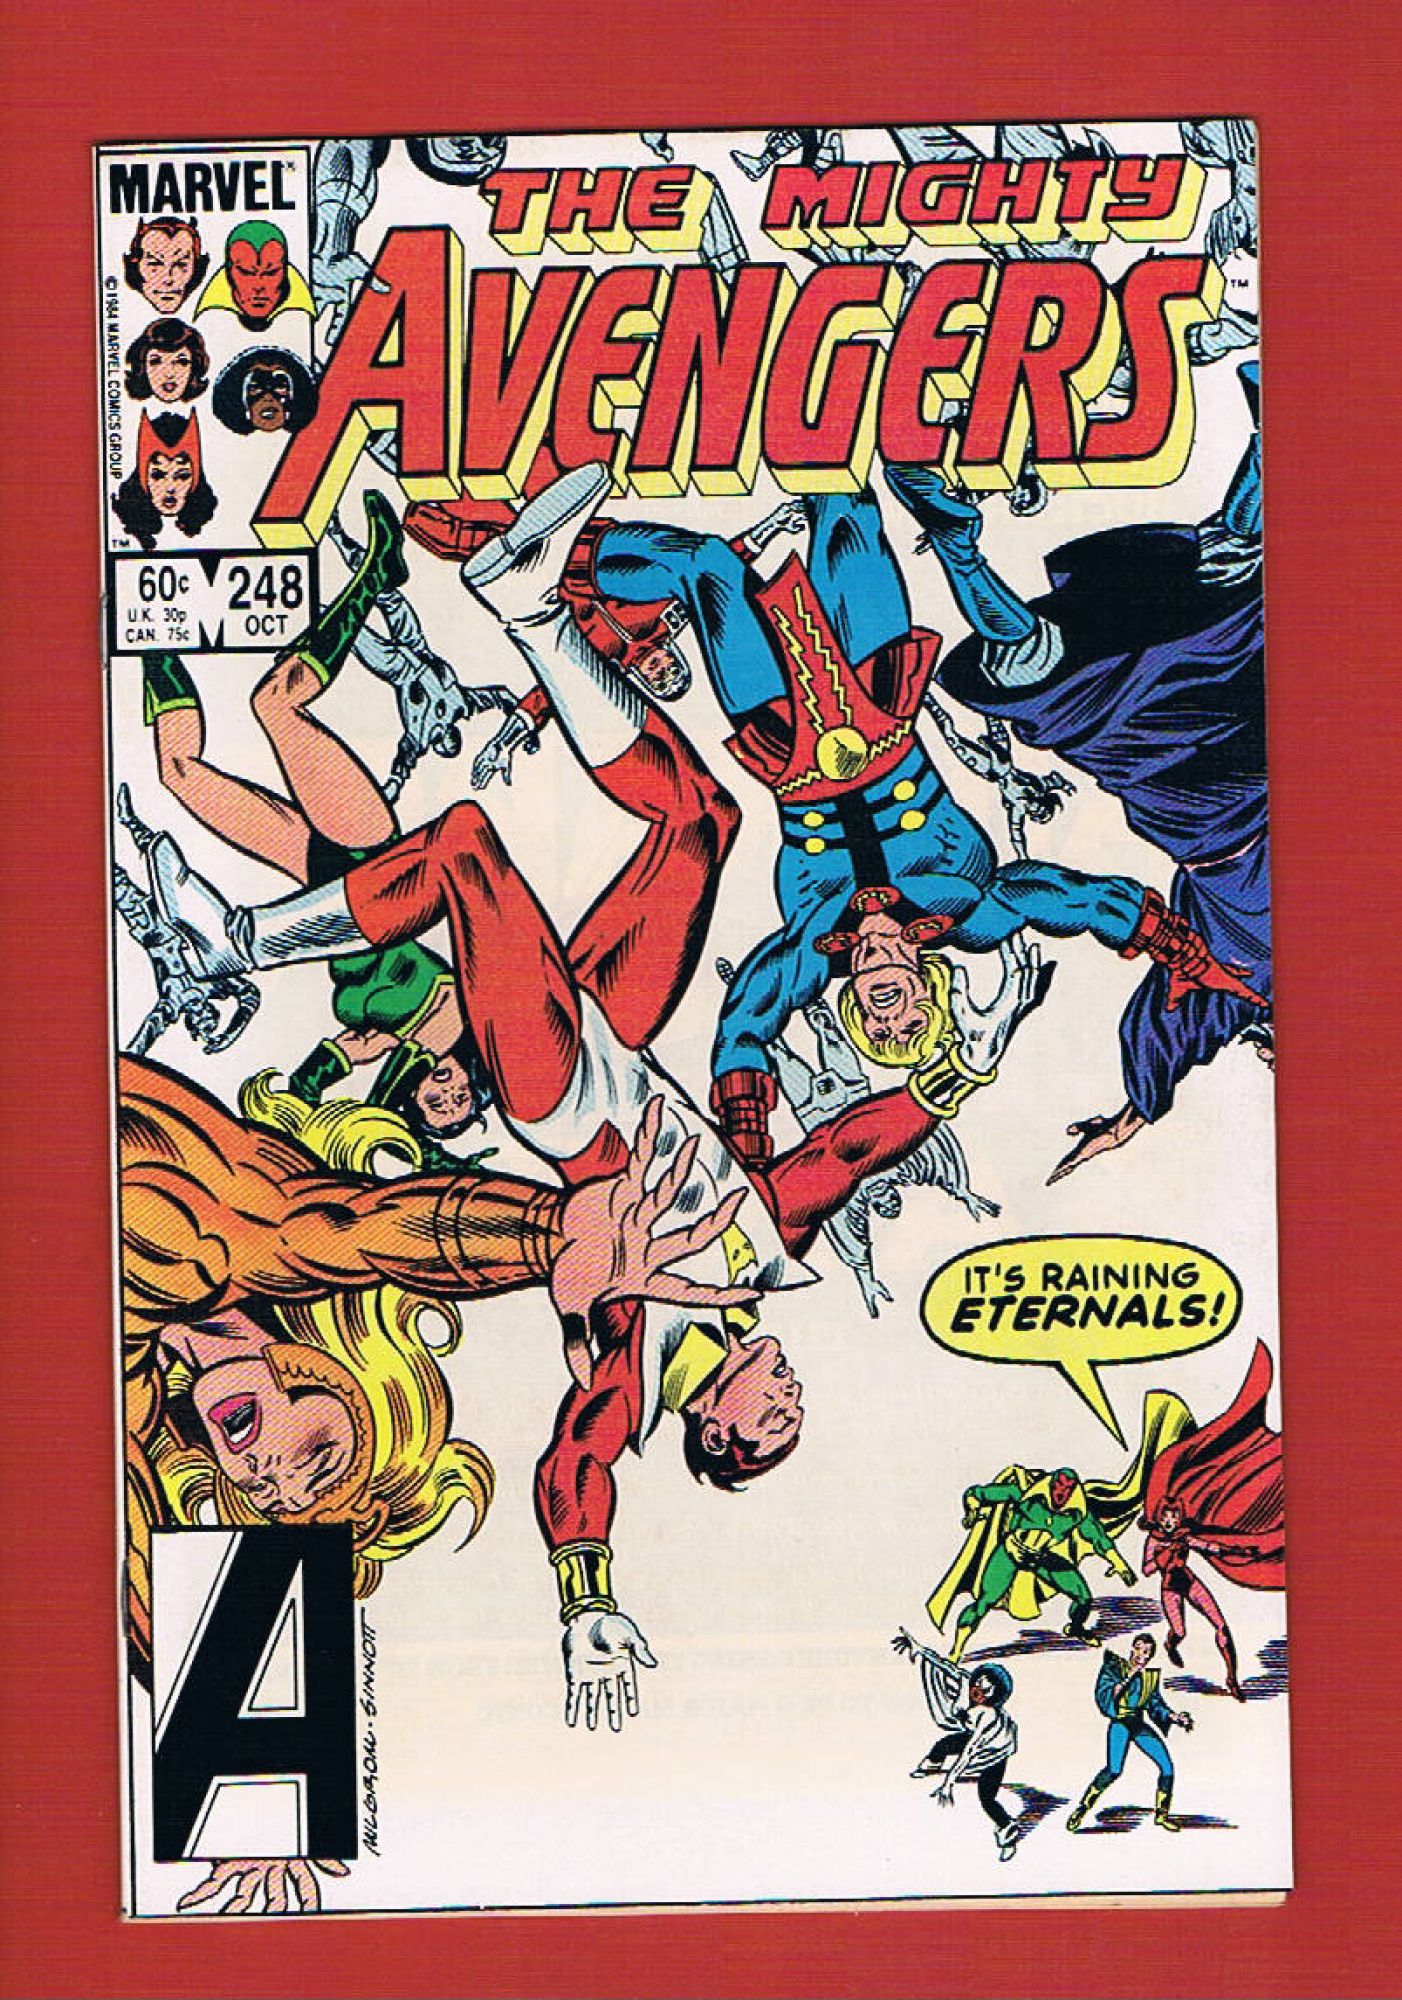 Avengers #248, Oct 1984, 8.5 VF+